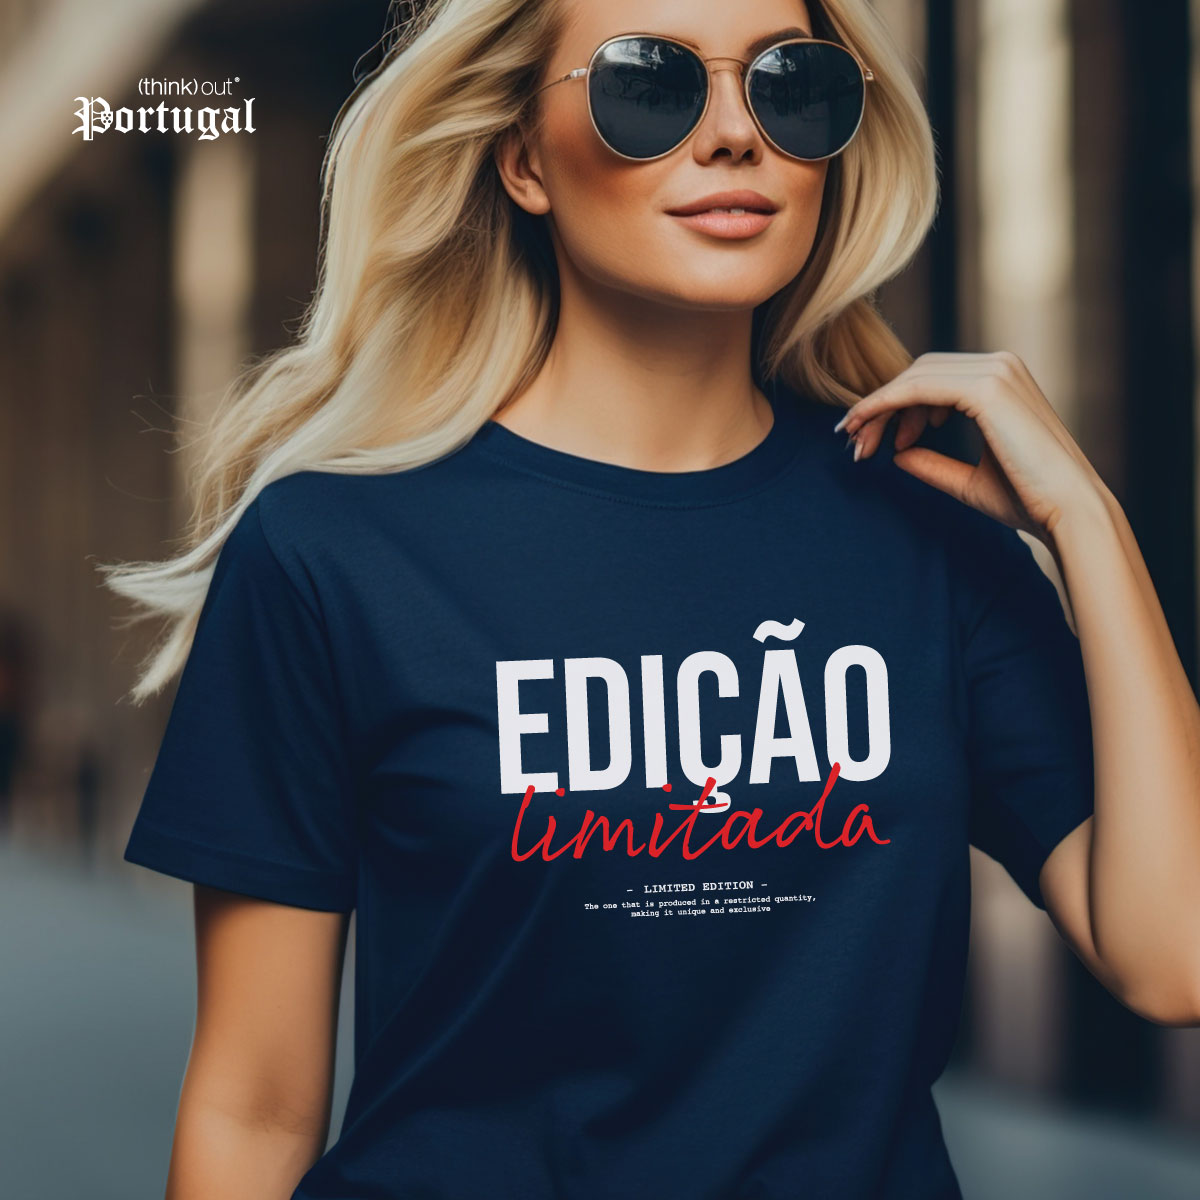 T-shirt de Senhora “Especial de Corrida” – (think) out